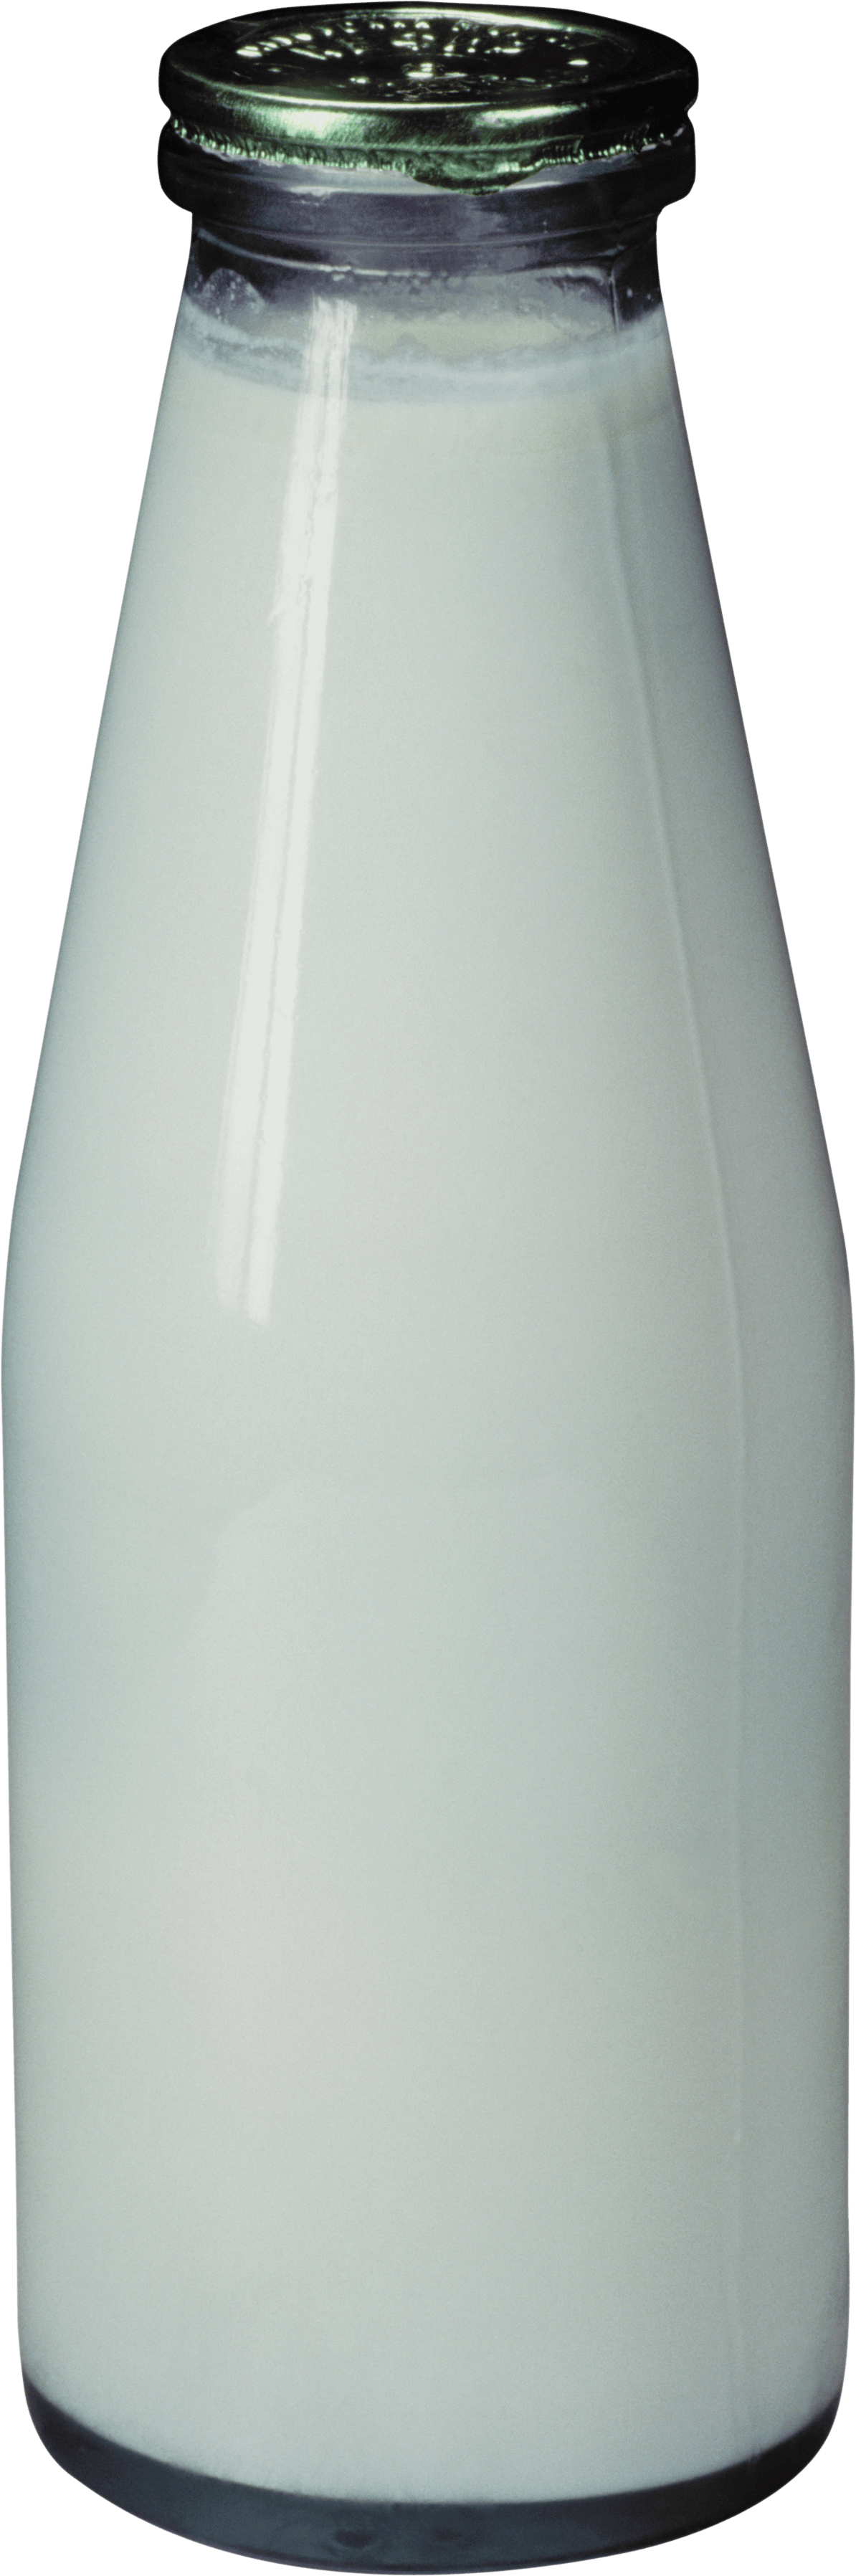 Kefir Bottle Glass Png PNG Image